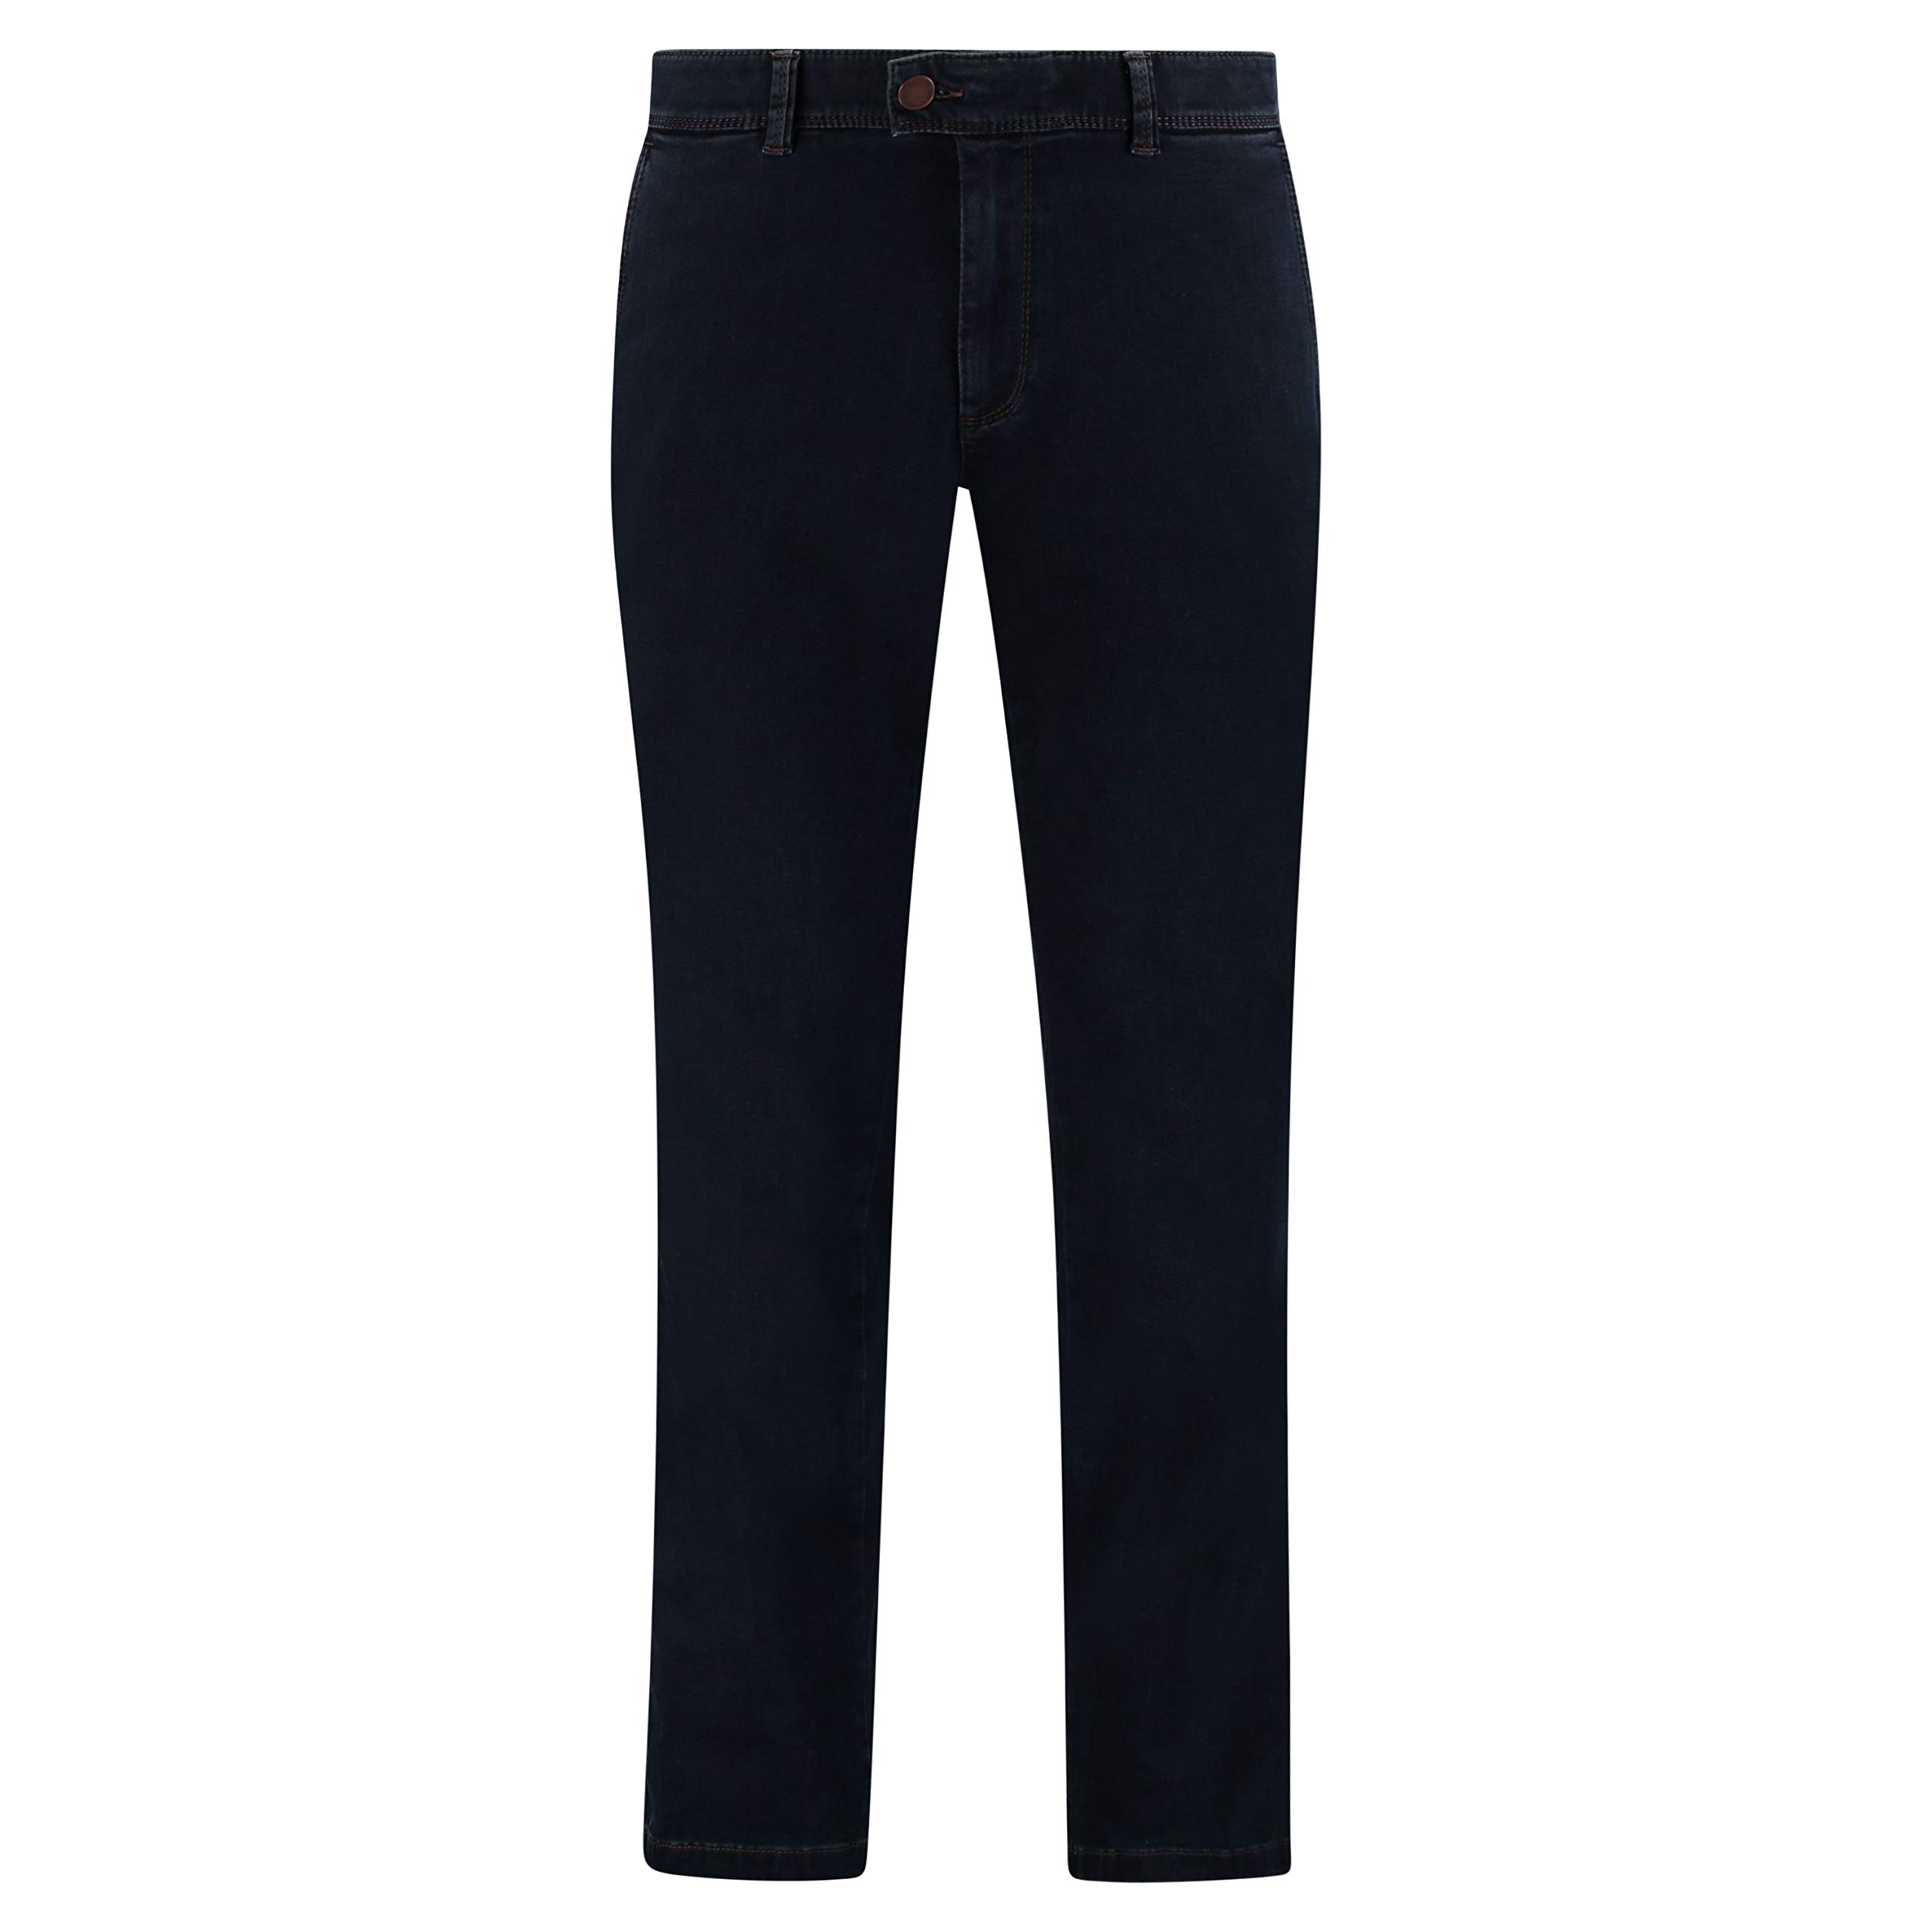 Eurex by Brax Herren Style Jim Tapered Fit Jeans, Blau , W46/L34